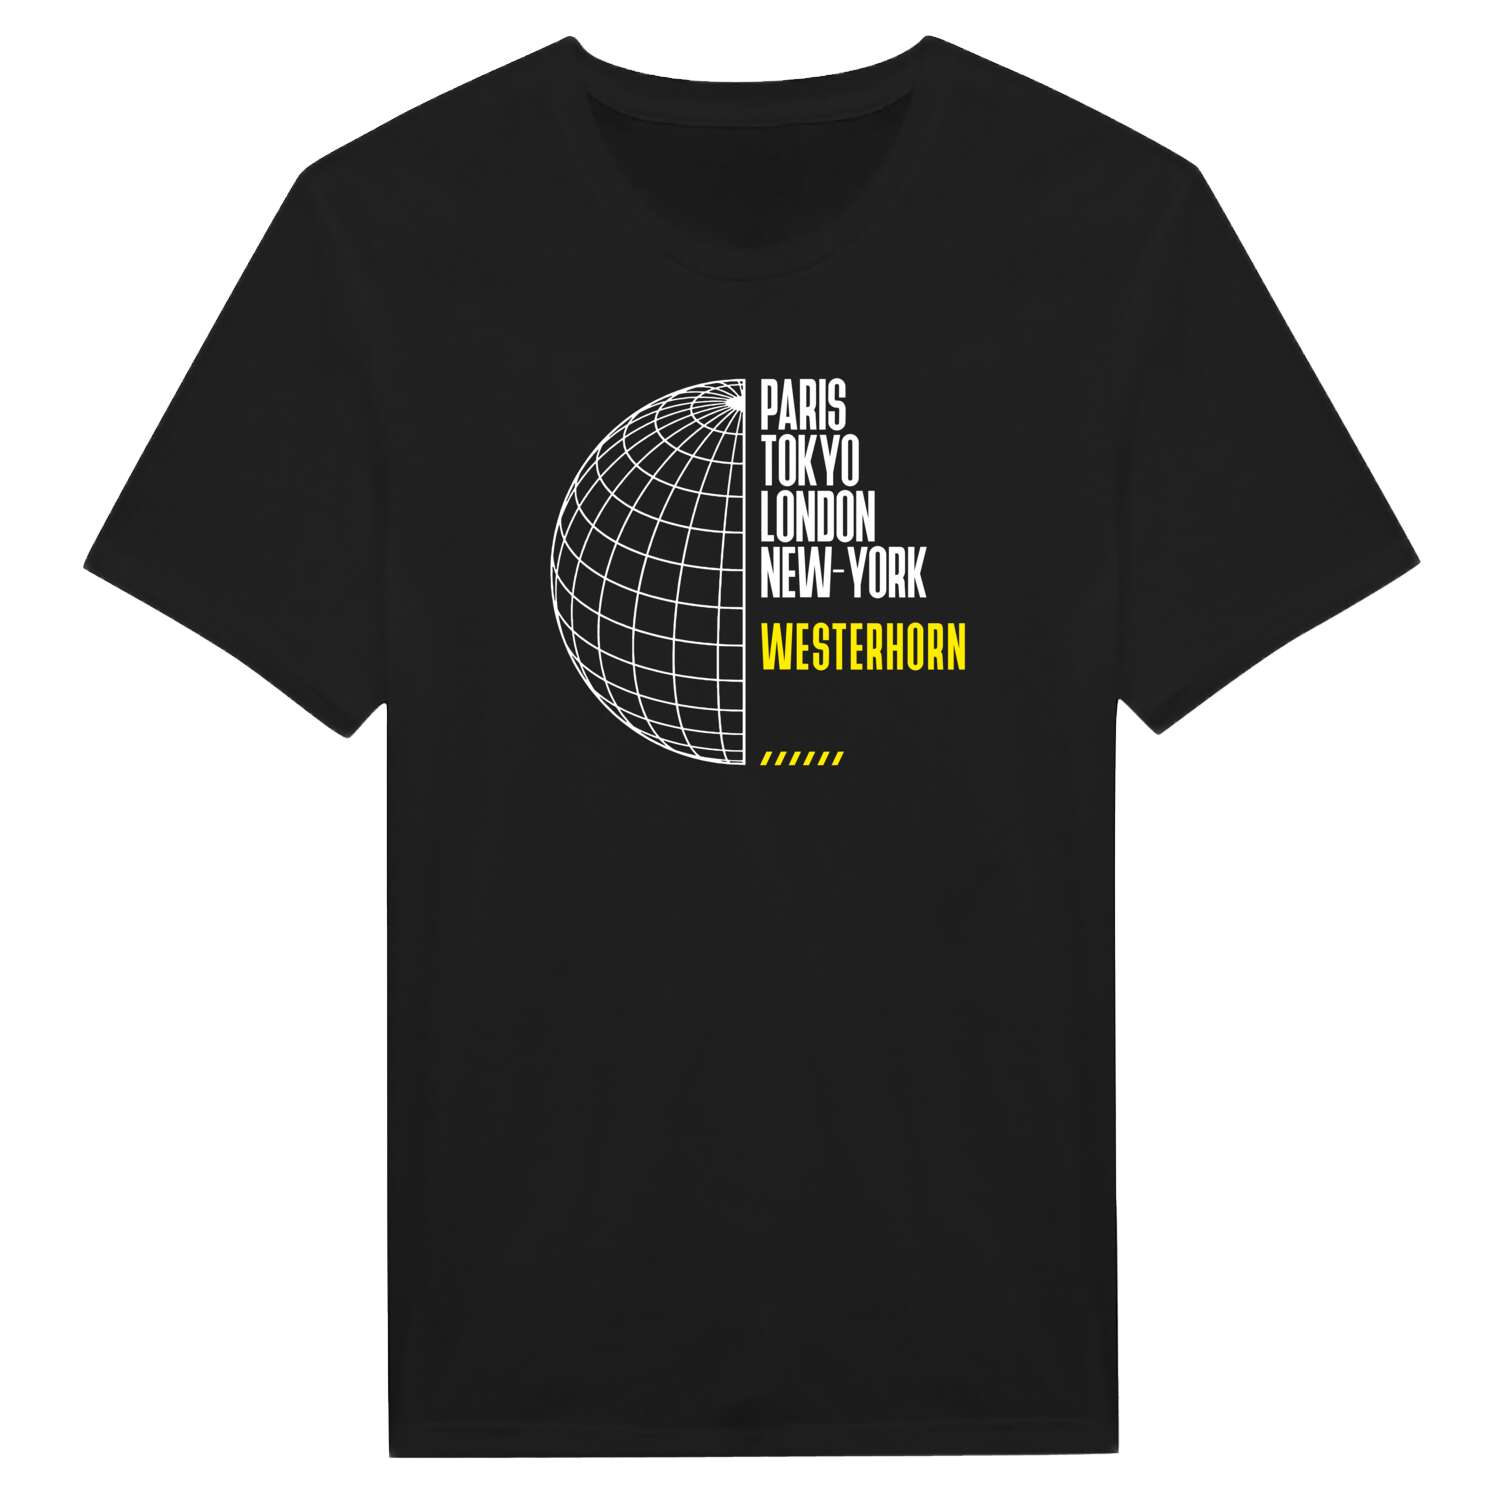 Westerhorn T-Shirt »Paris Tokyo London«